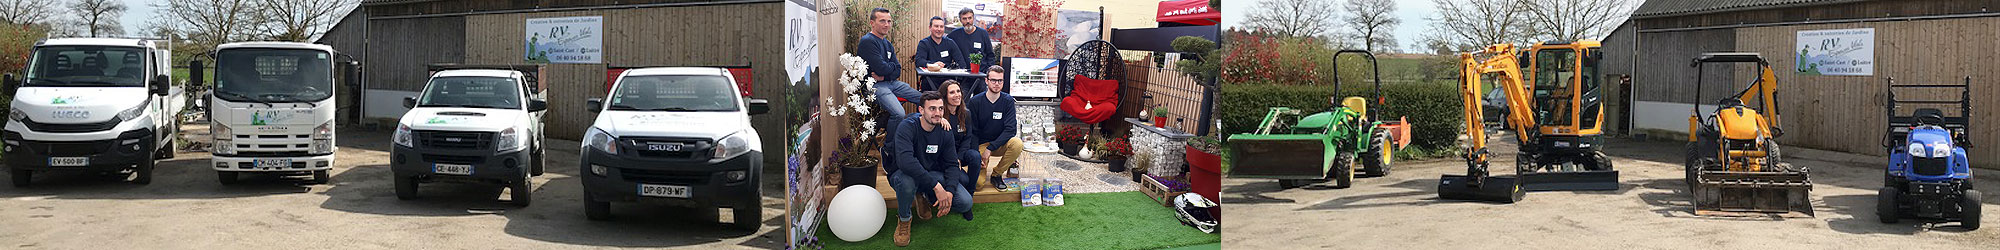 RV Espaces Verts : une équipe de paysagistes au service de votre jardin